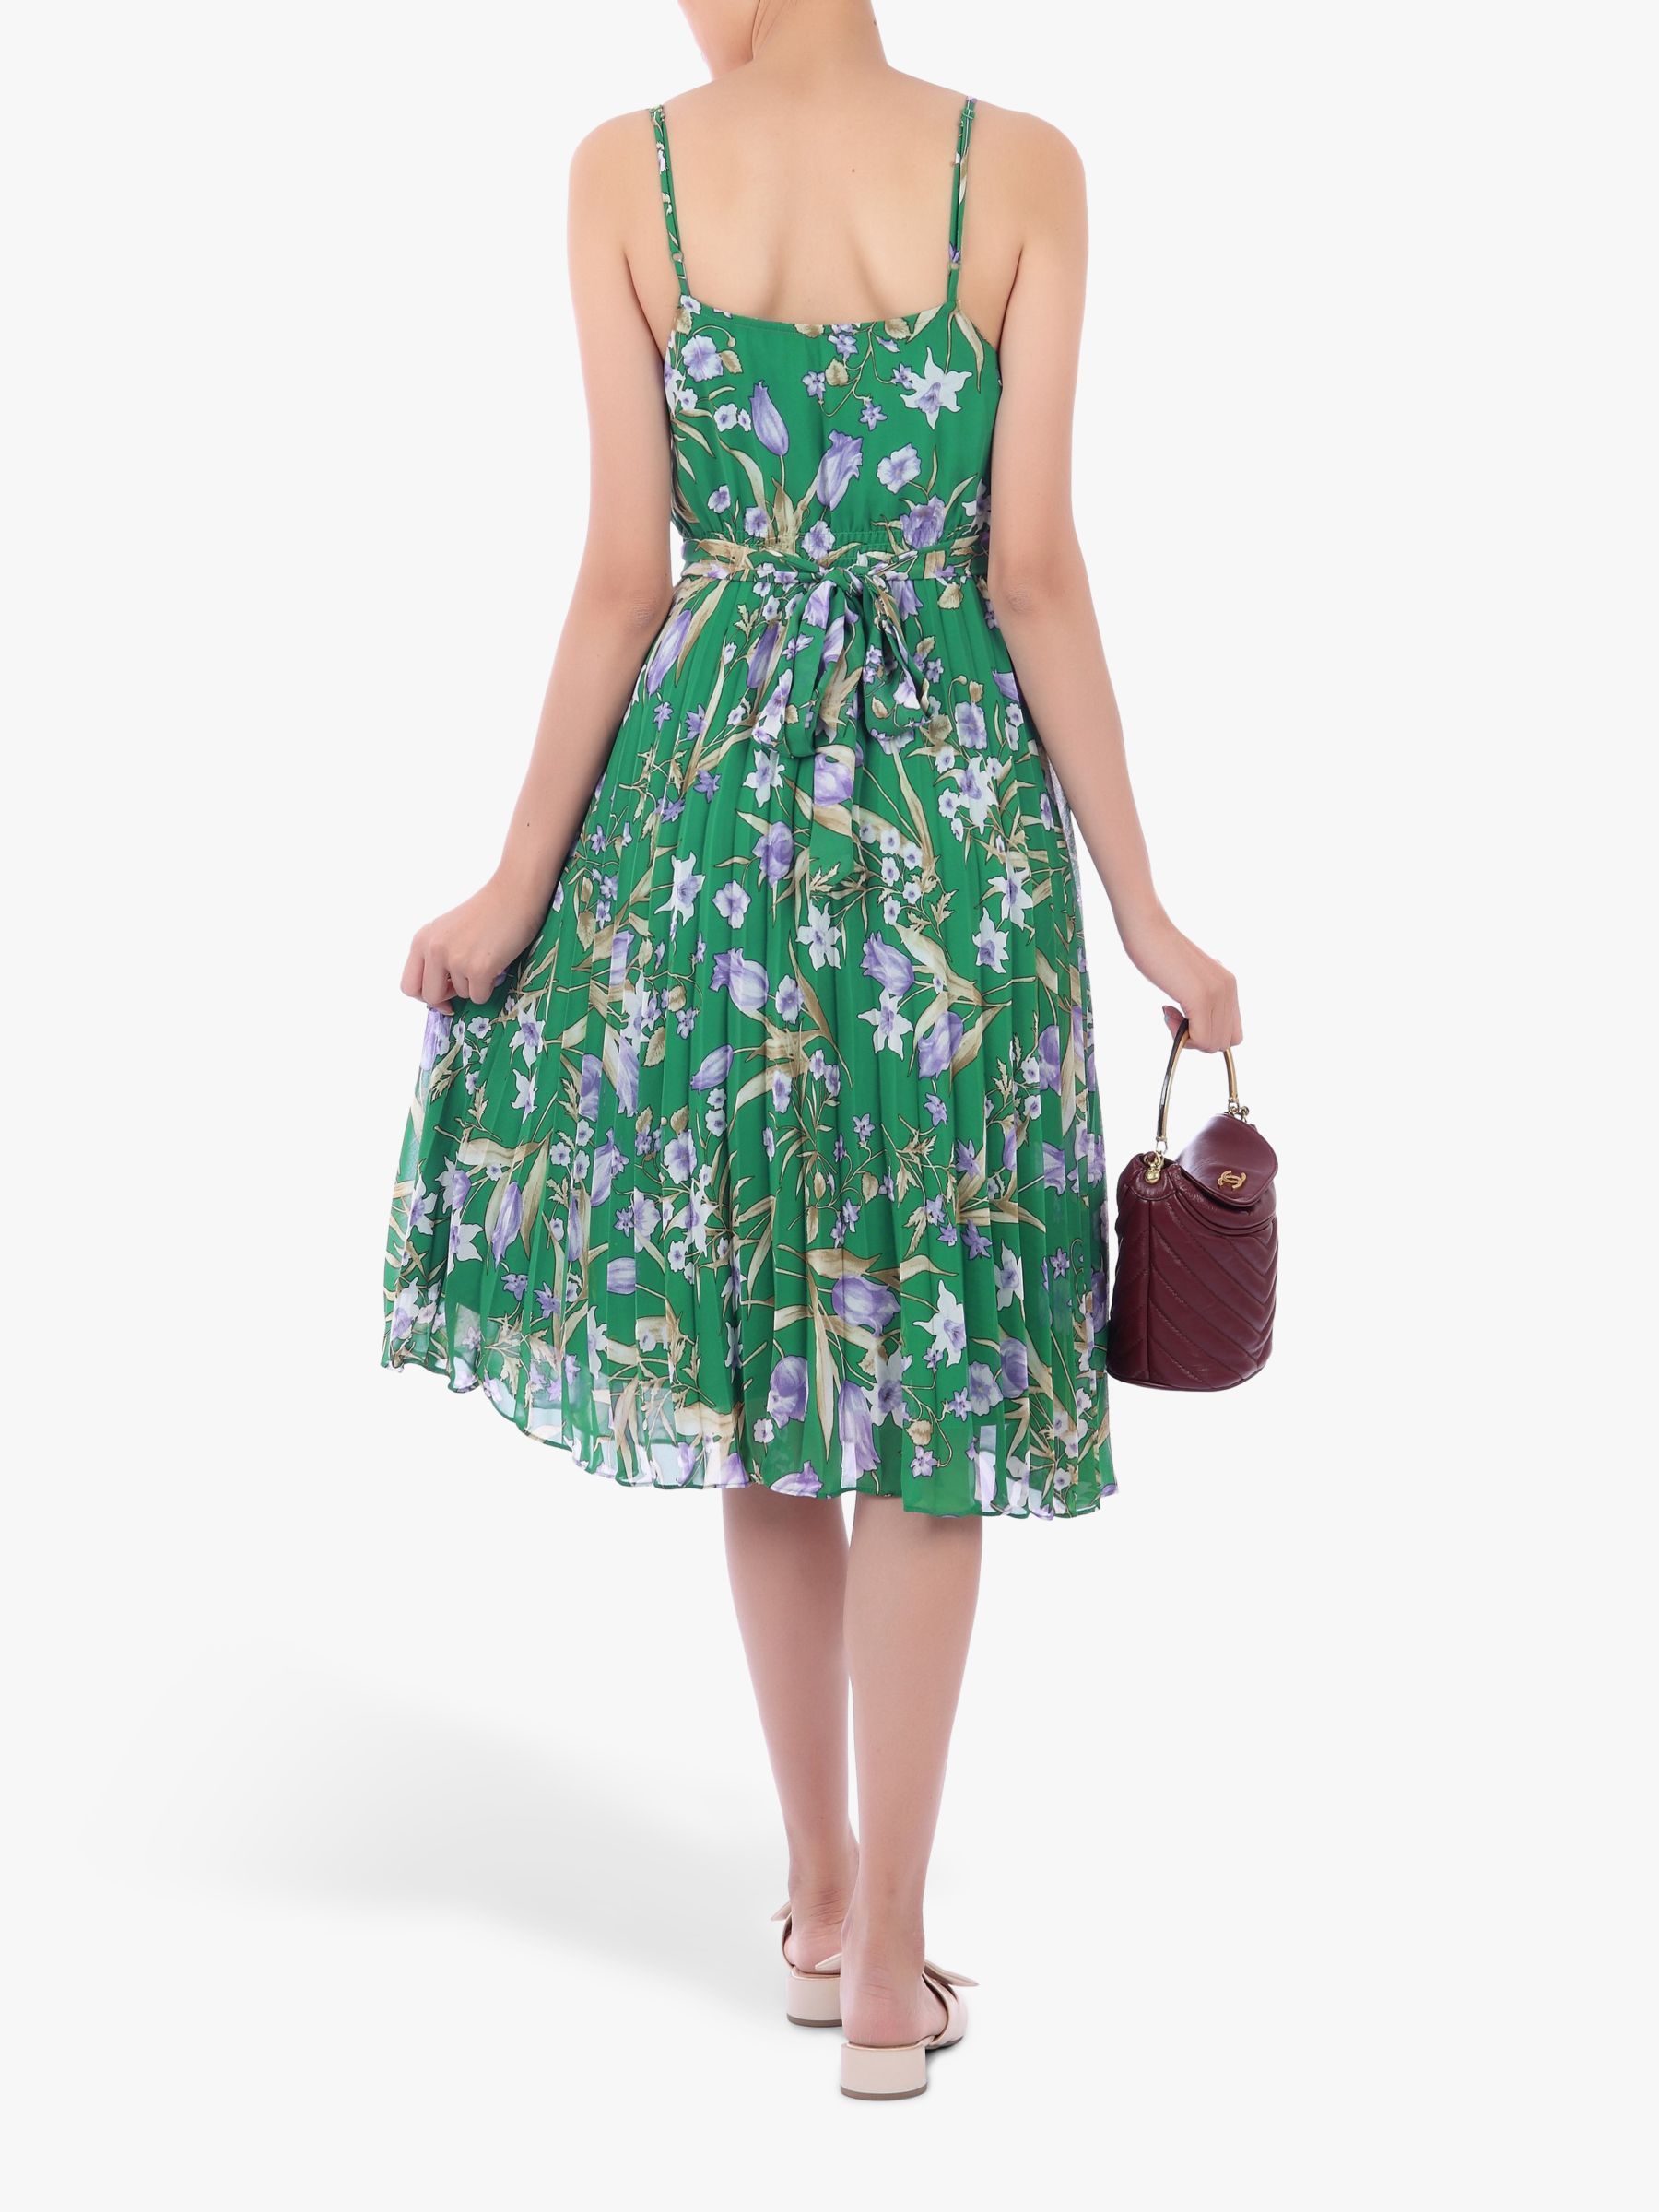 19 dress Floral green ideas